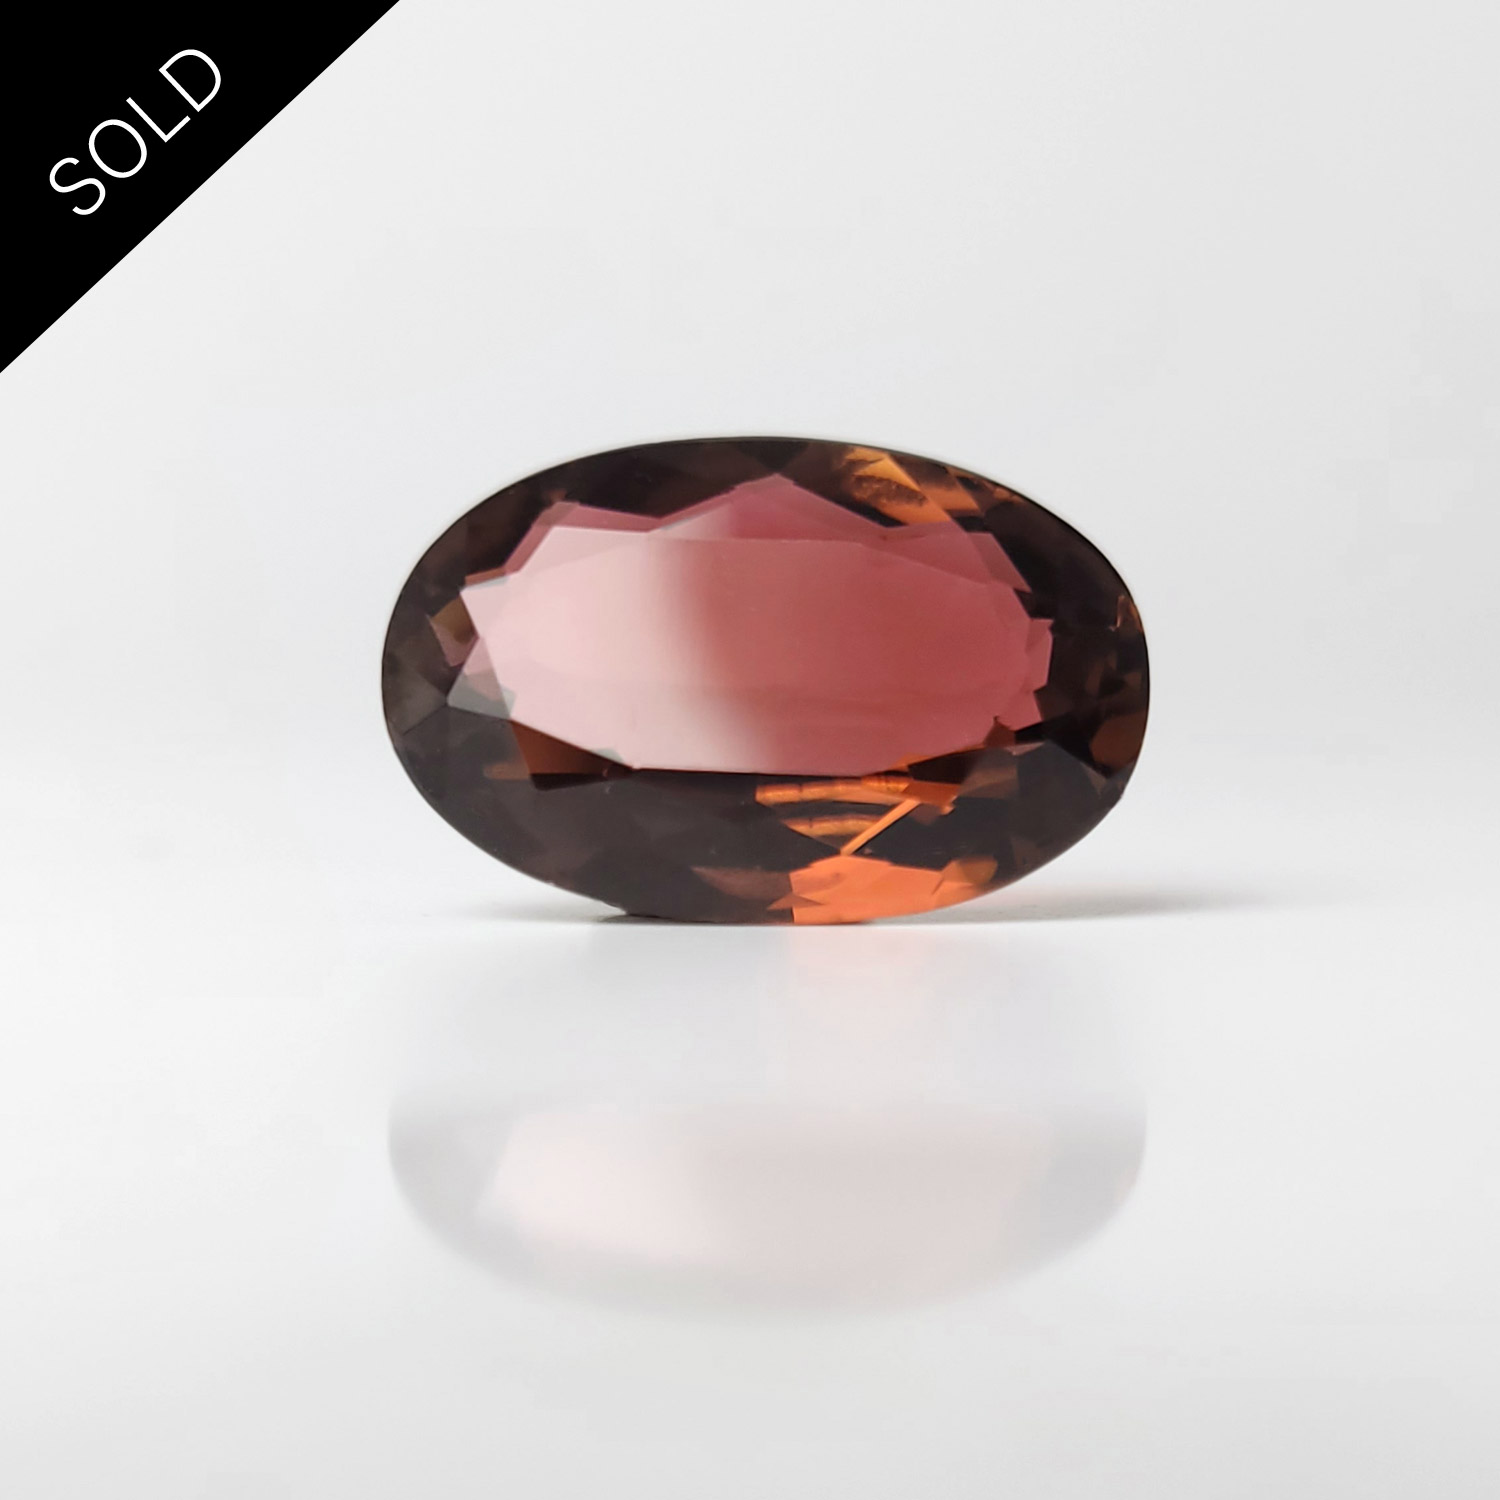 Dieser nachhaltige Edelstein ist oval facettiert und hat eine rosarote Farbe.